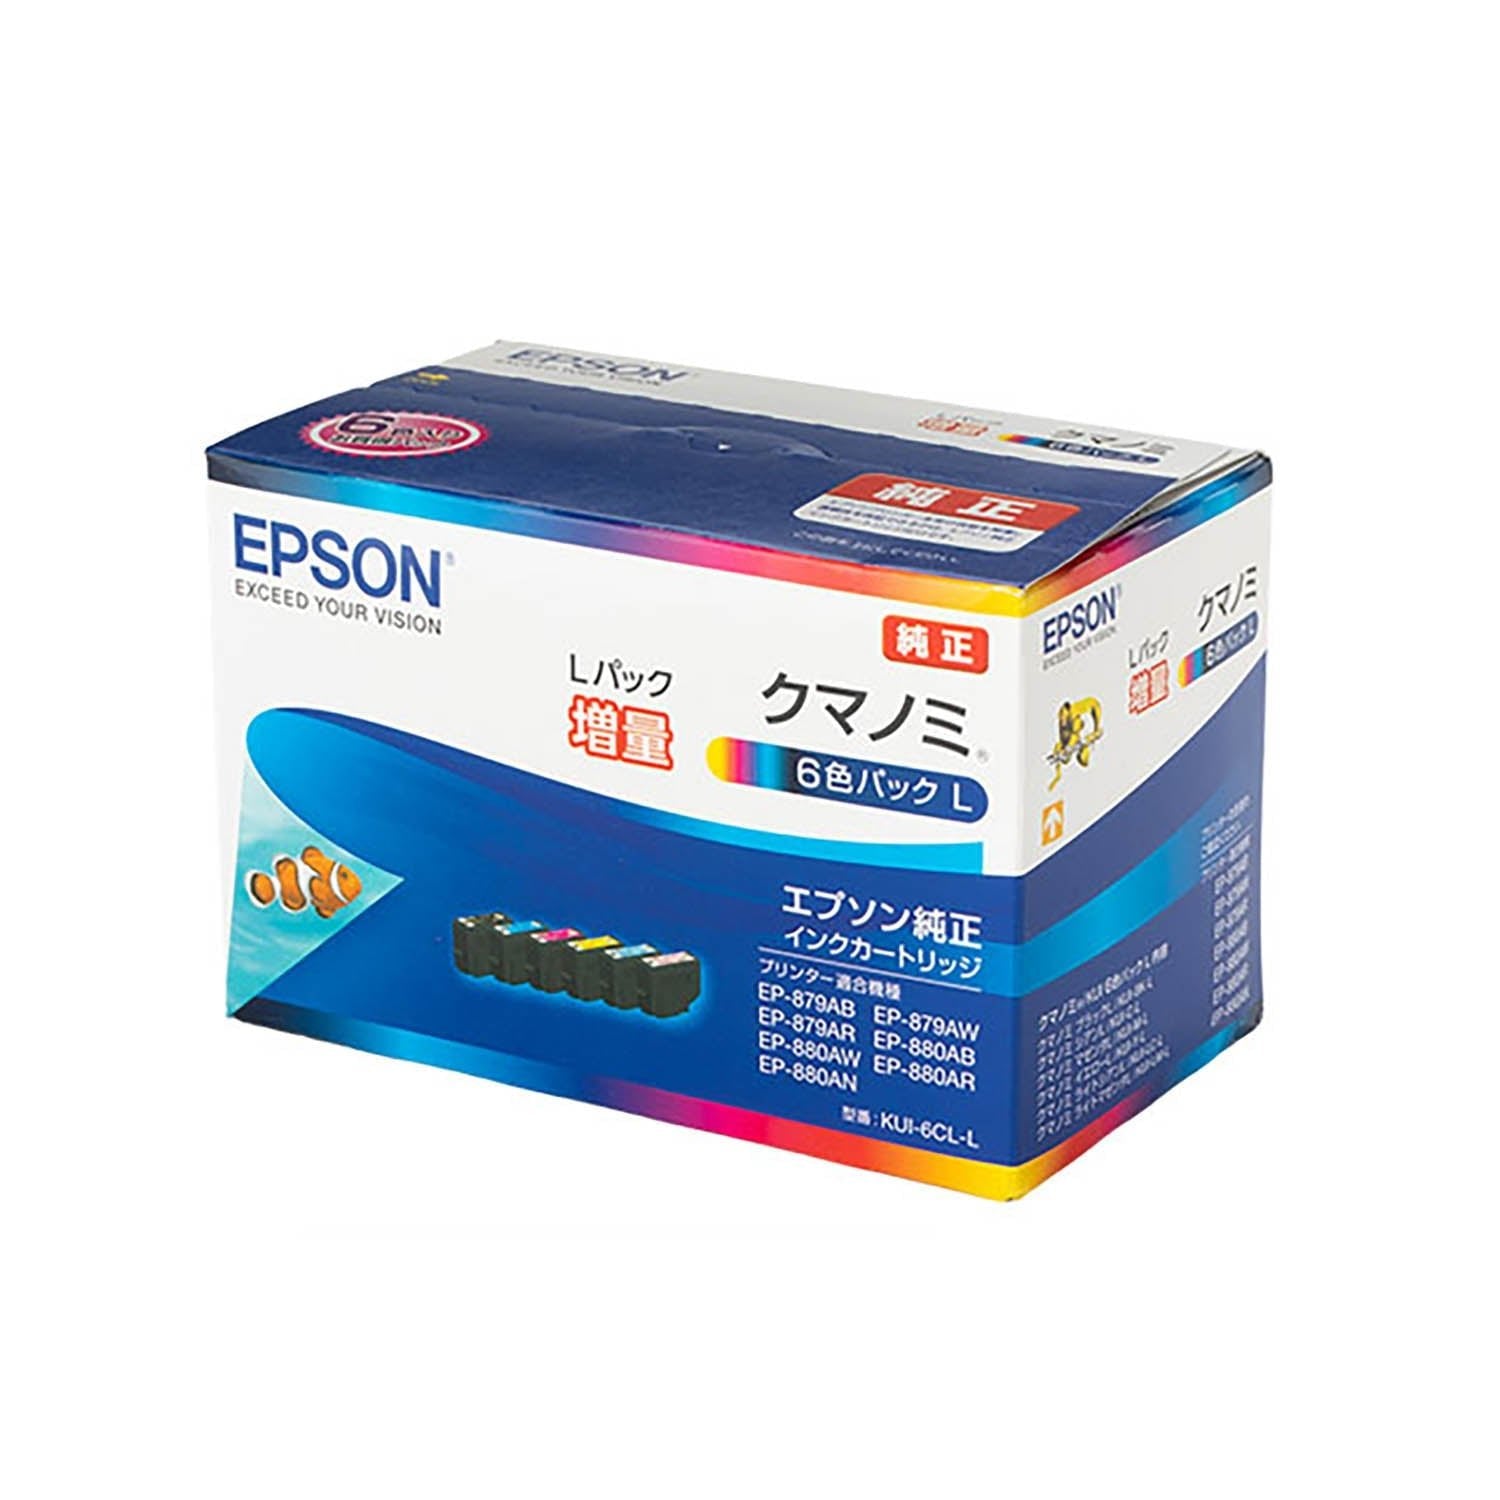 エプソン用 KUI-6CL-L (クマノミ) 純正インク 6色セット 増量版